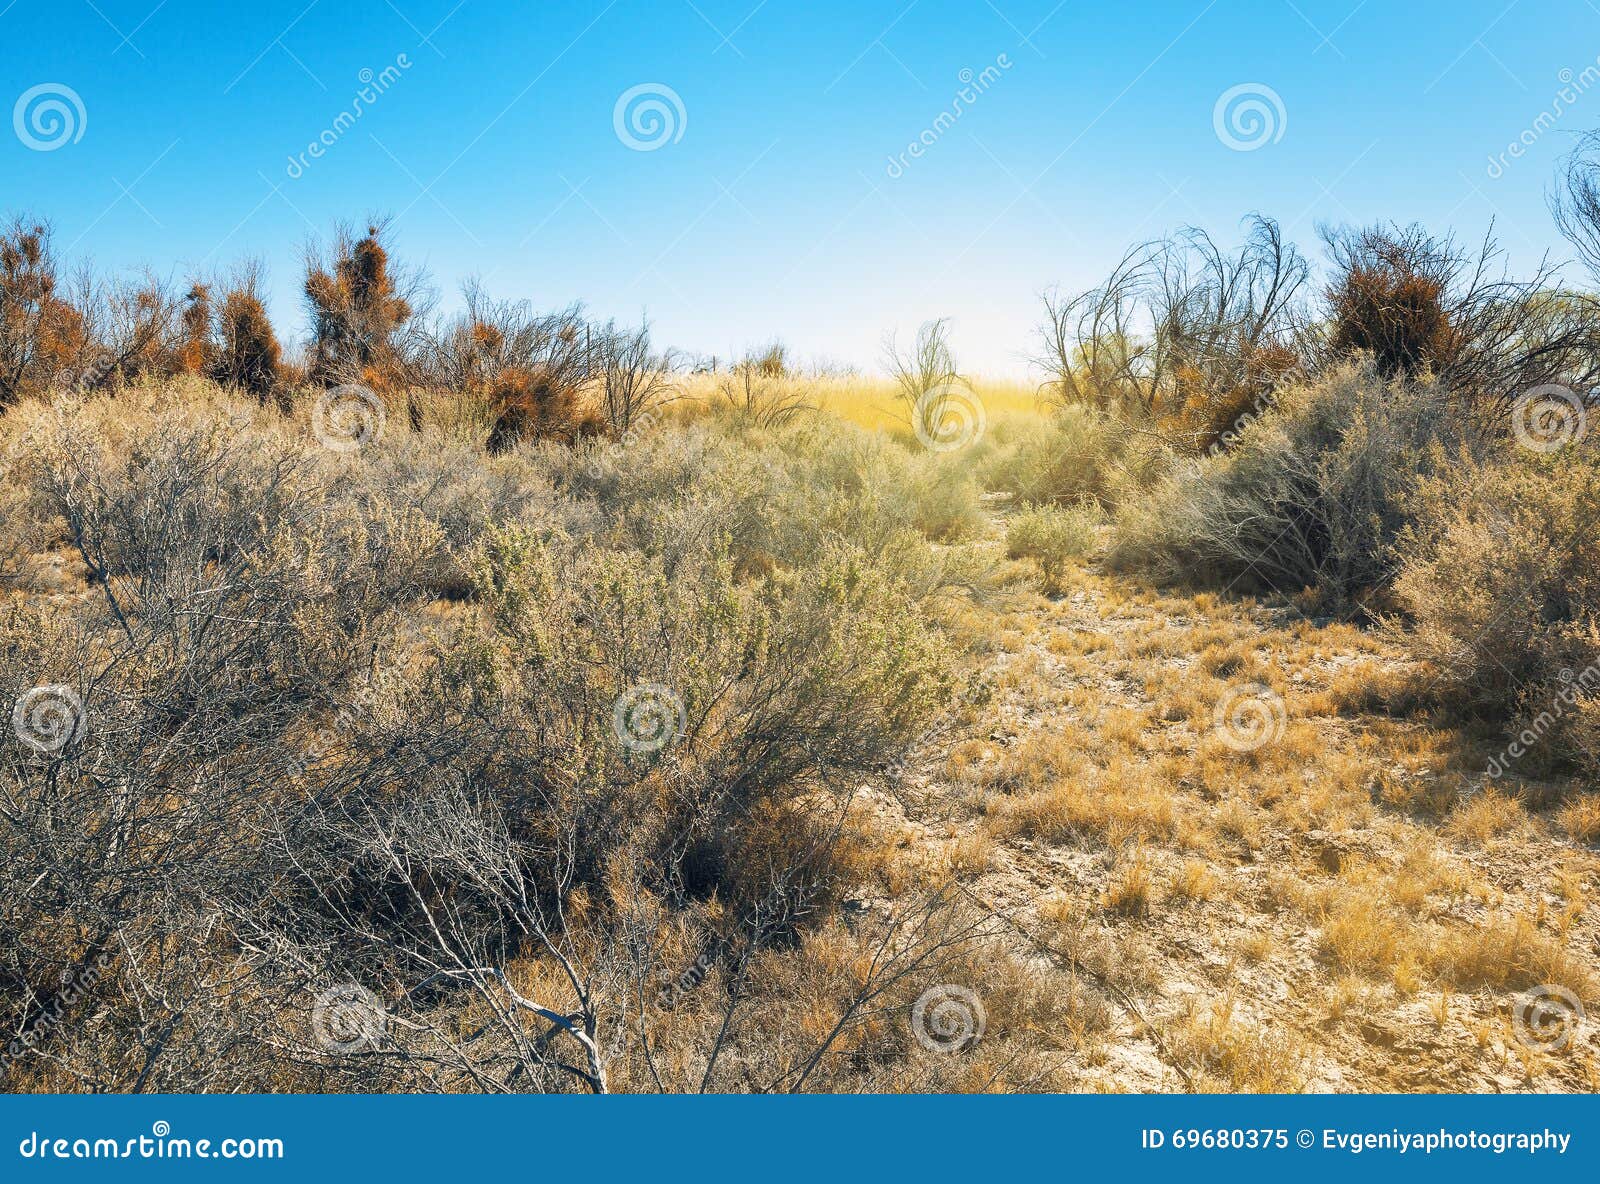 dried bushes in ash meadows, california